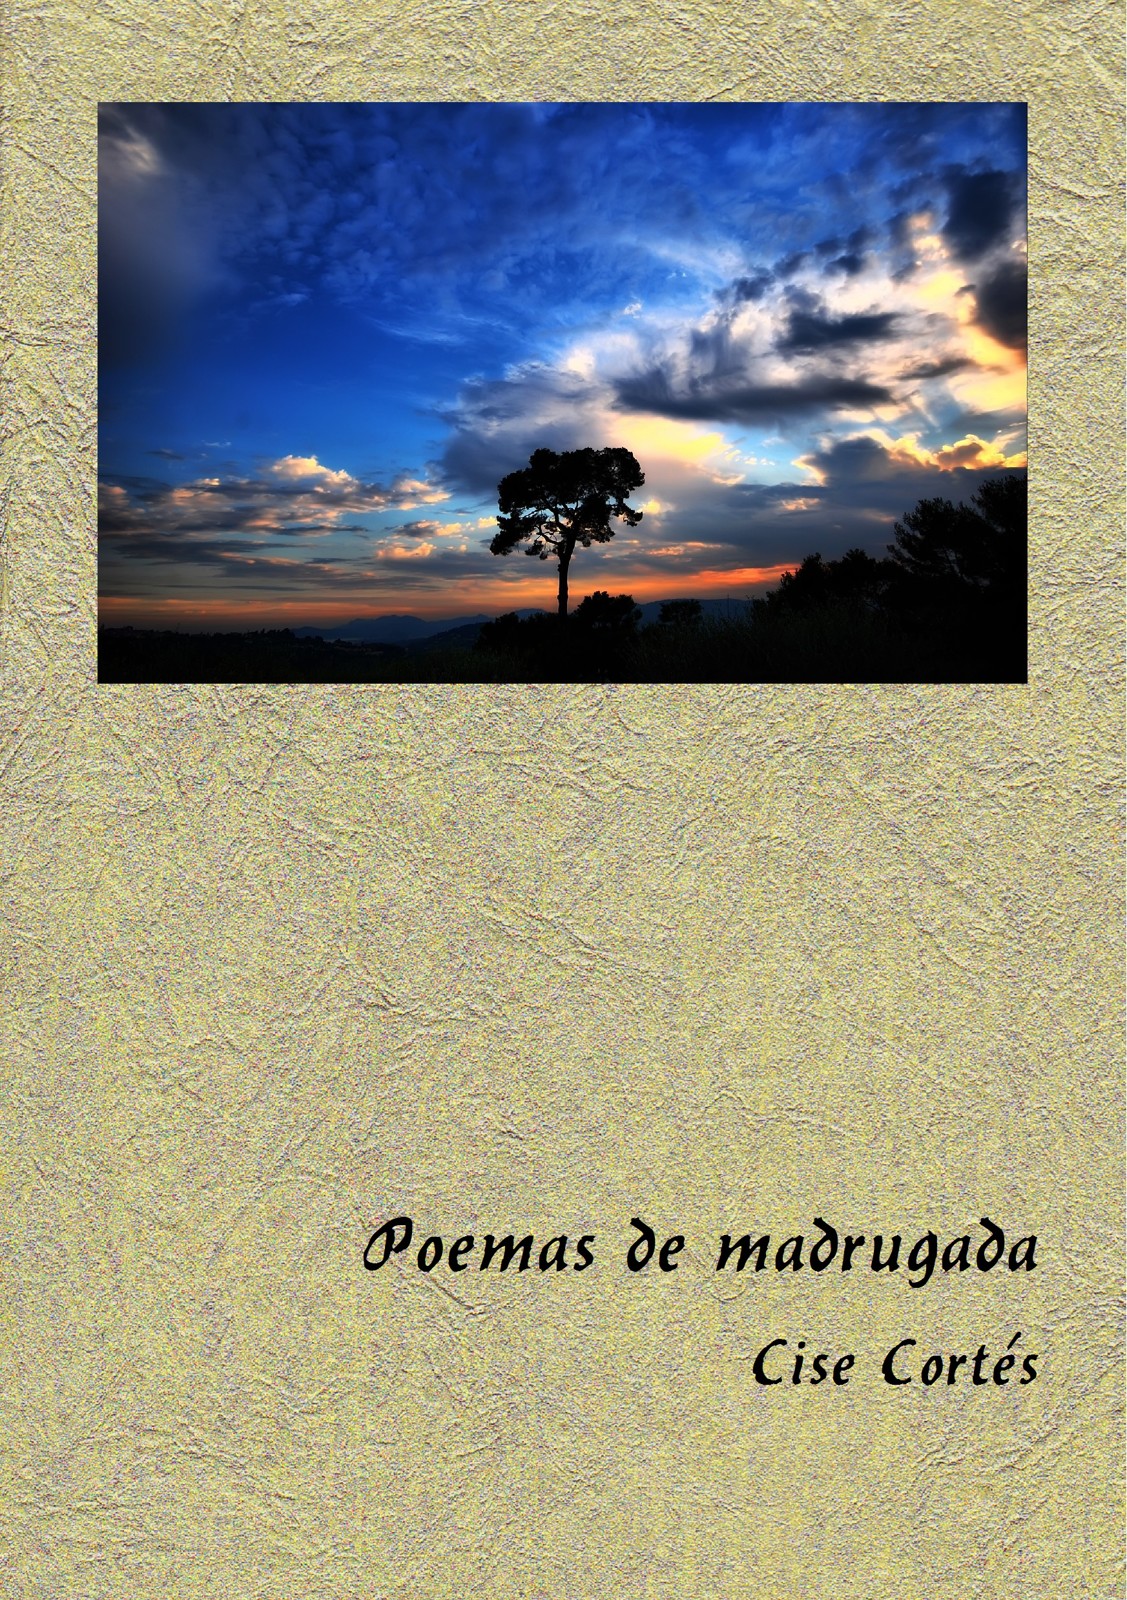 Portada del poemario "Poemas de madrugada", de Cise Cortés